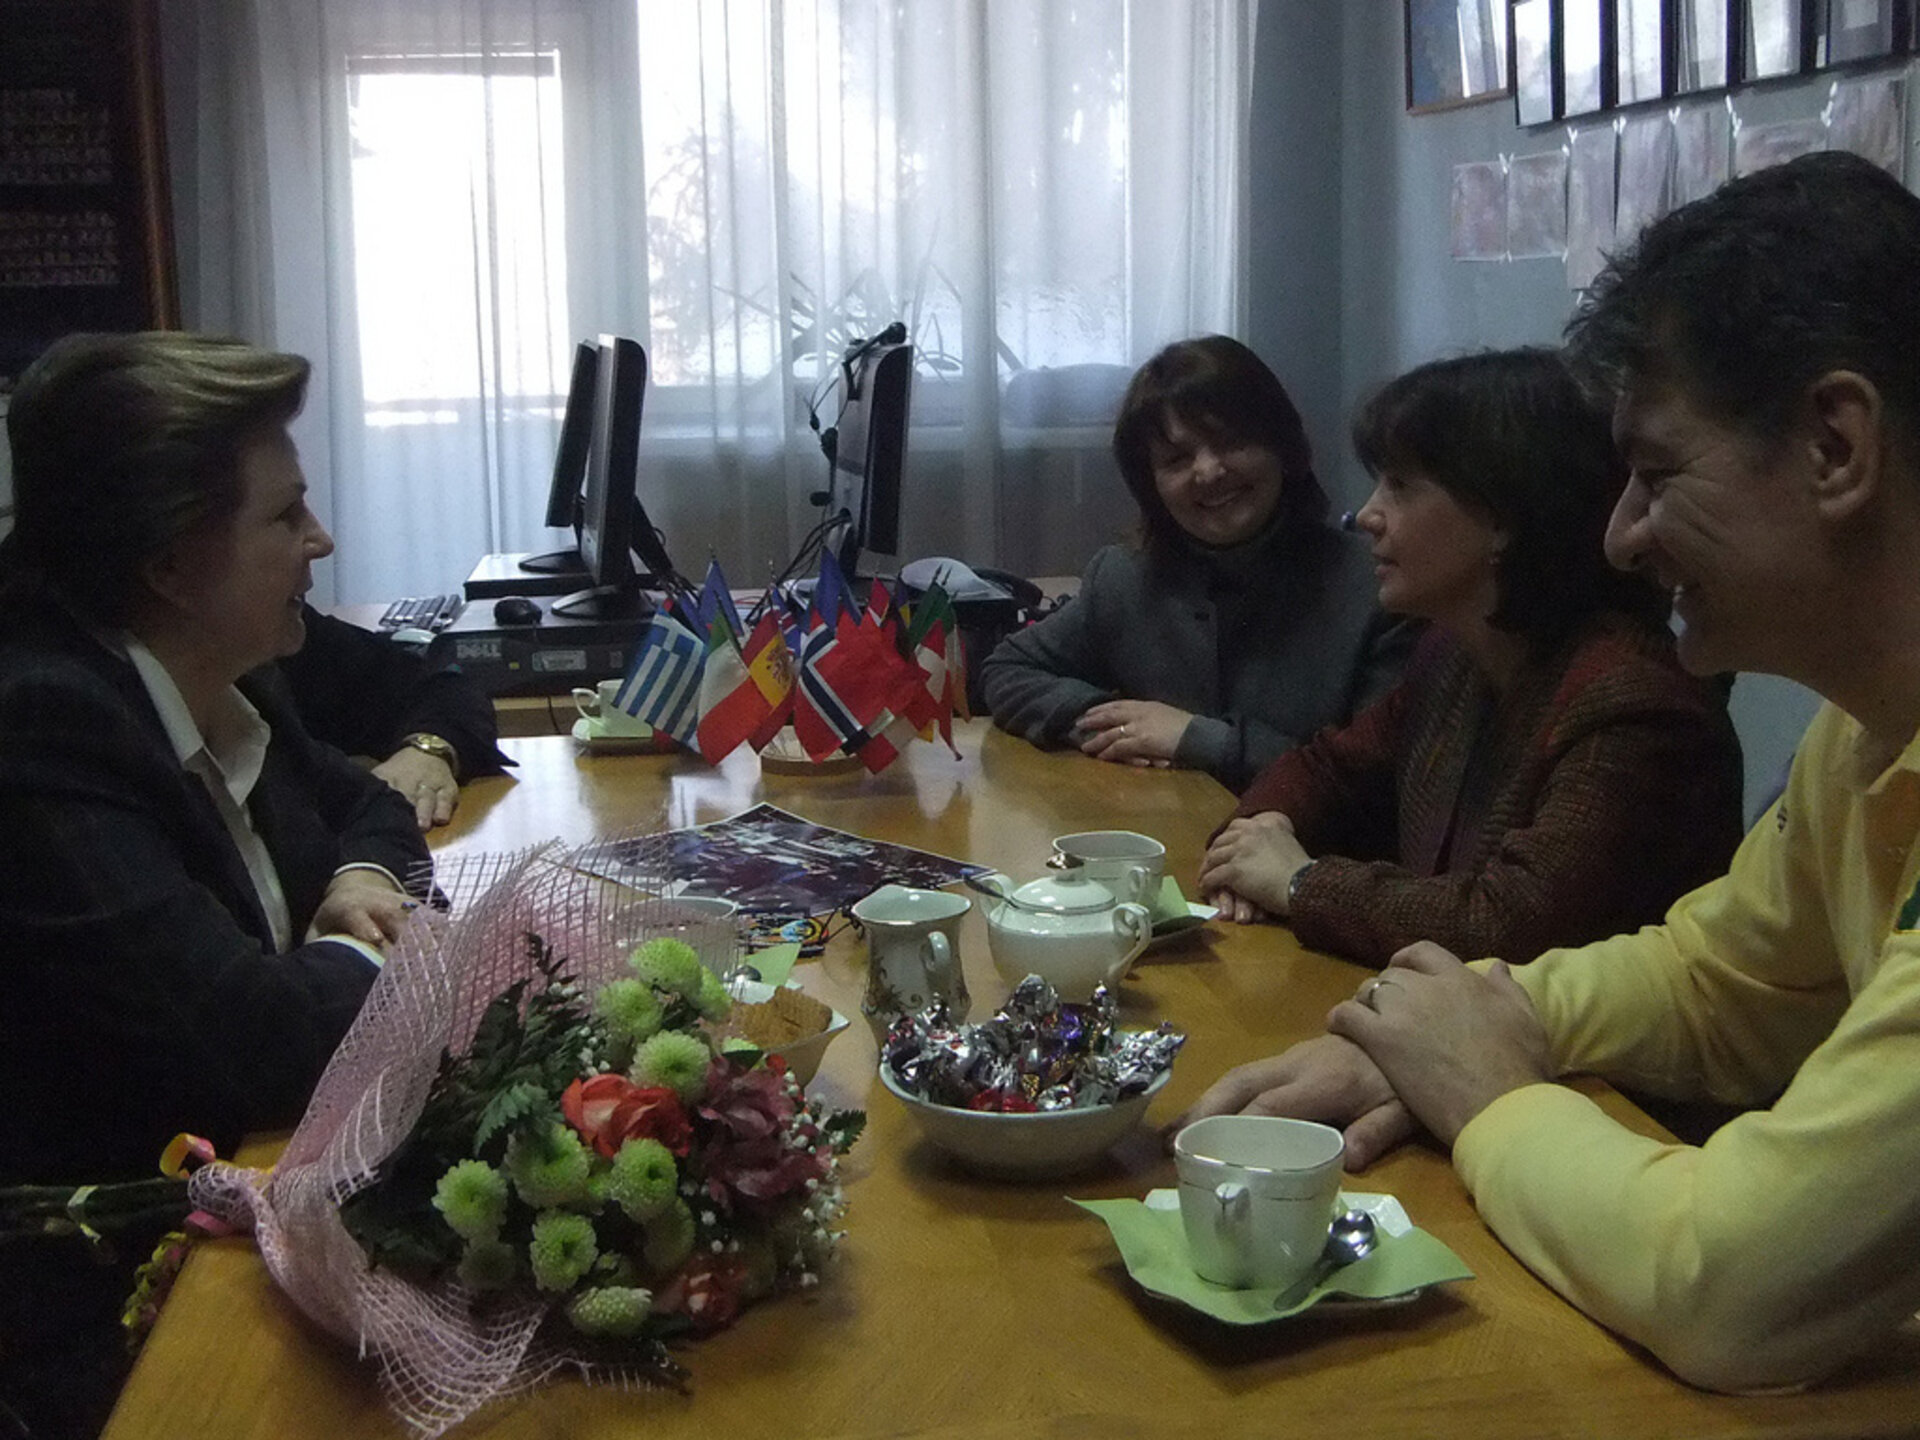 Meeting Valentina Tereshkova